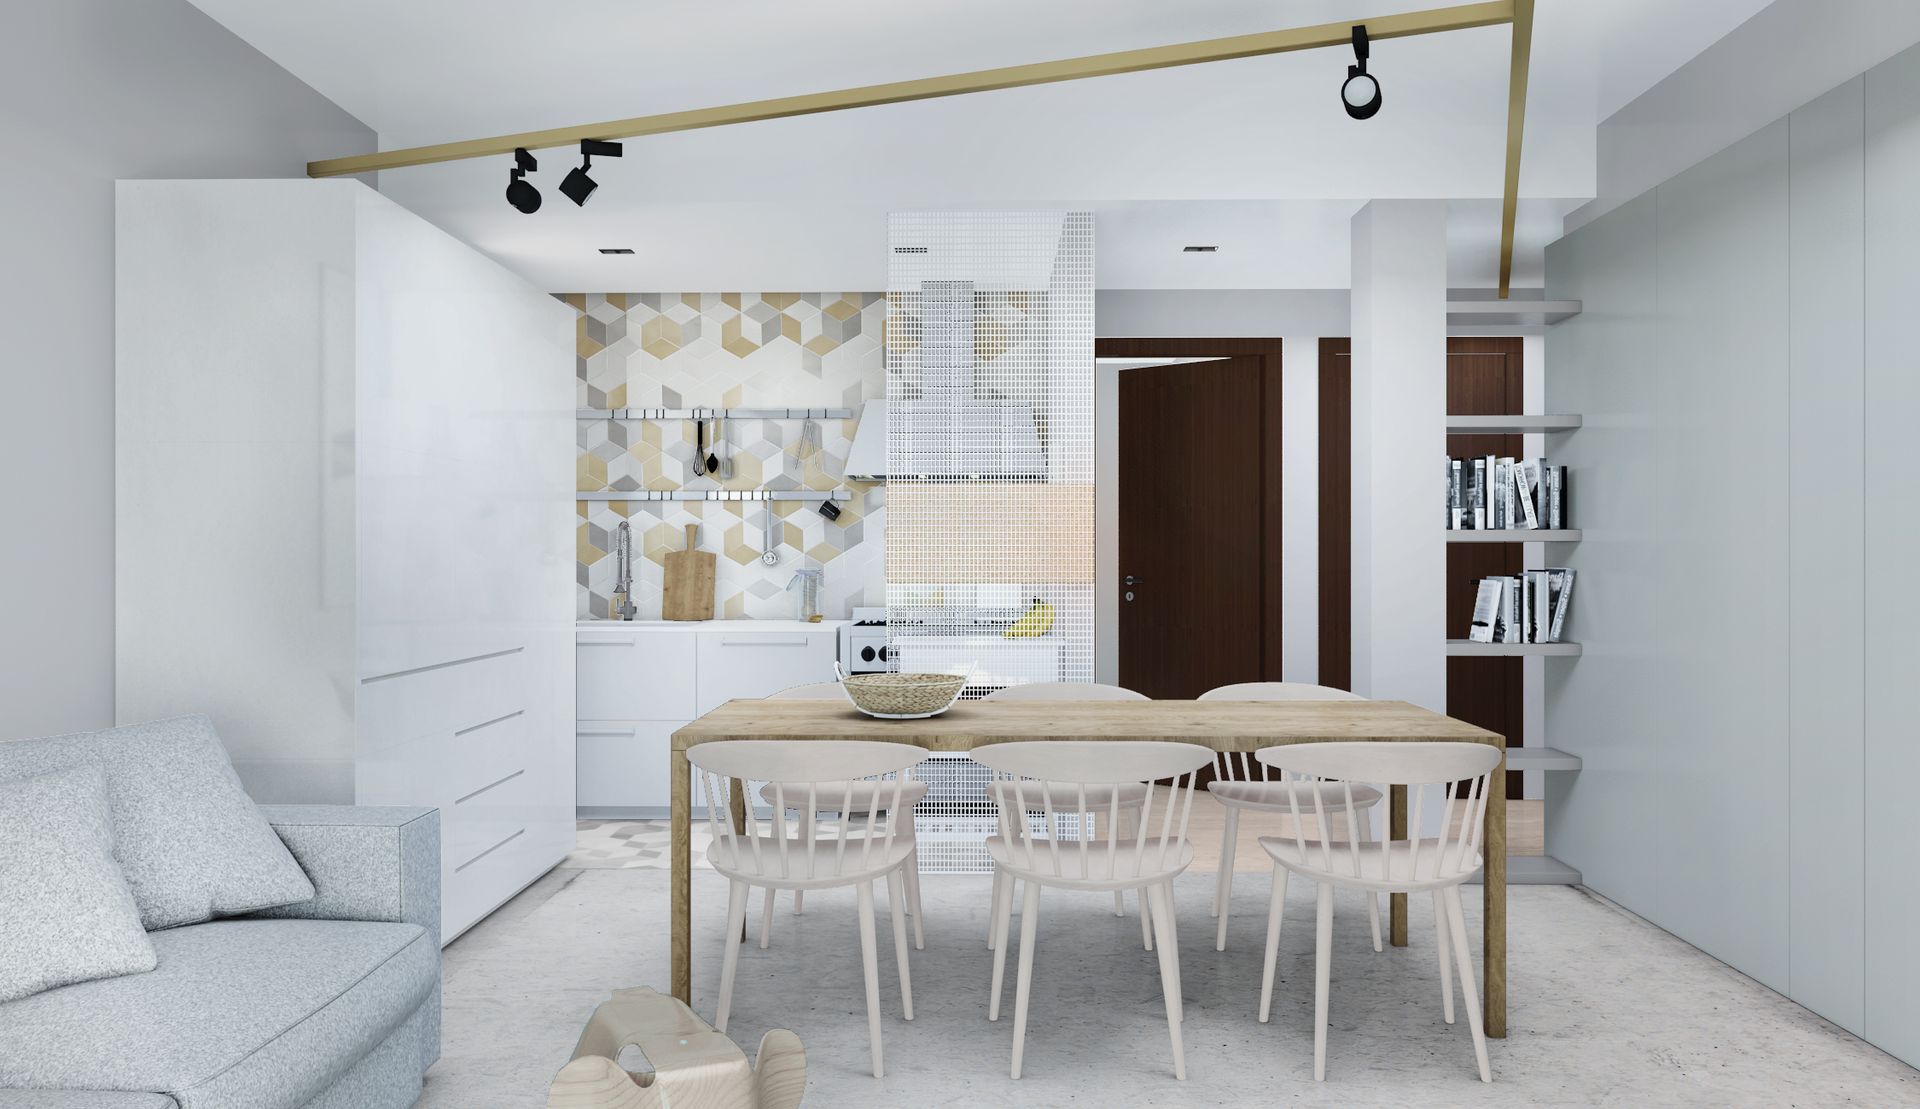 Progetto interior design, ristrutturazione casa vacanze Lago di Garda, Lago di Como, Lago d'Iseo. Officina Magisafi architettura design - living